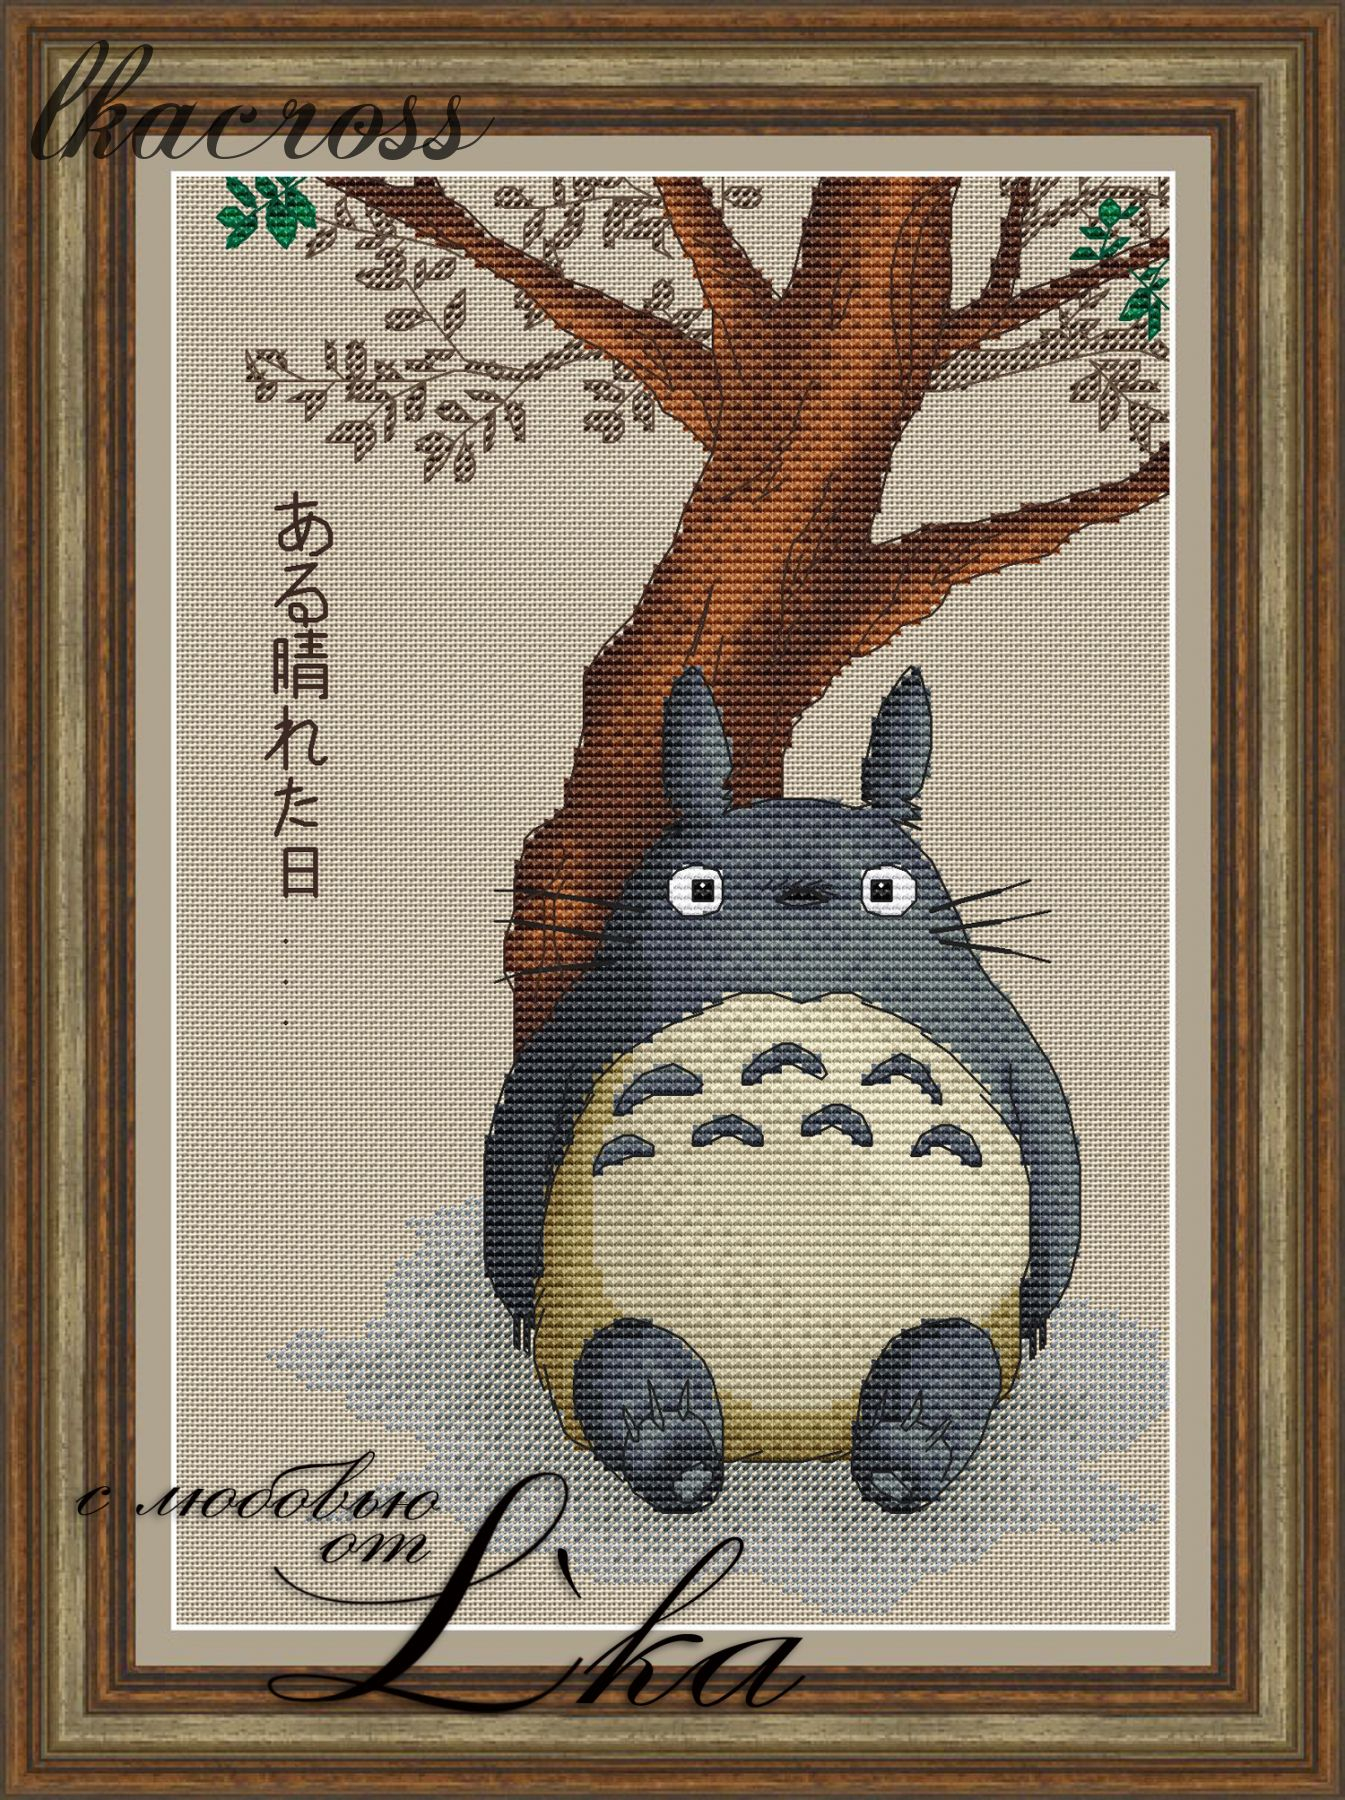 Totoro Embroidery Pattern Cross Stitch Pattern Totoro